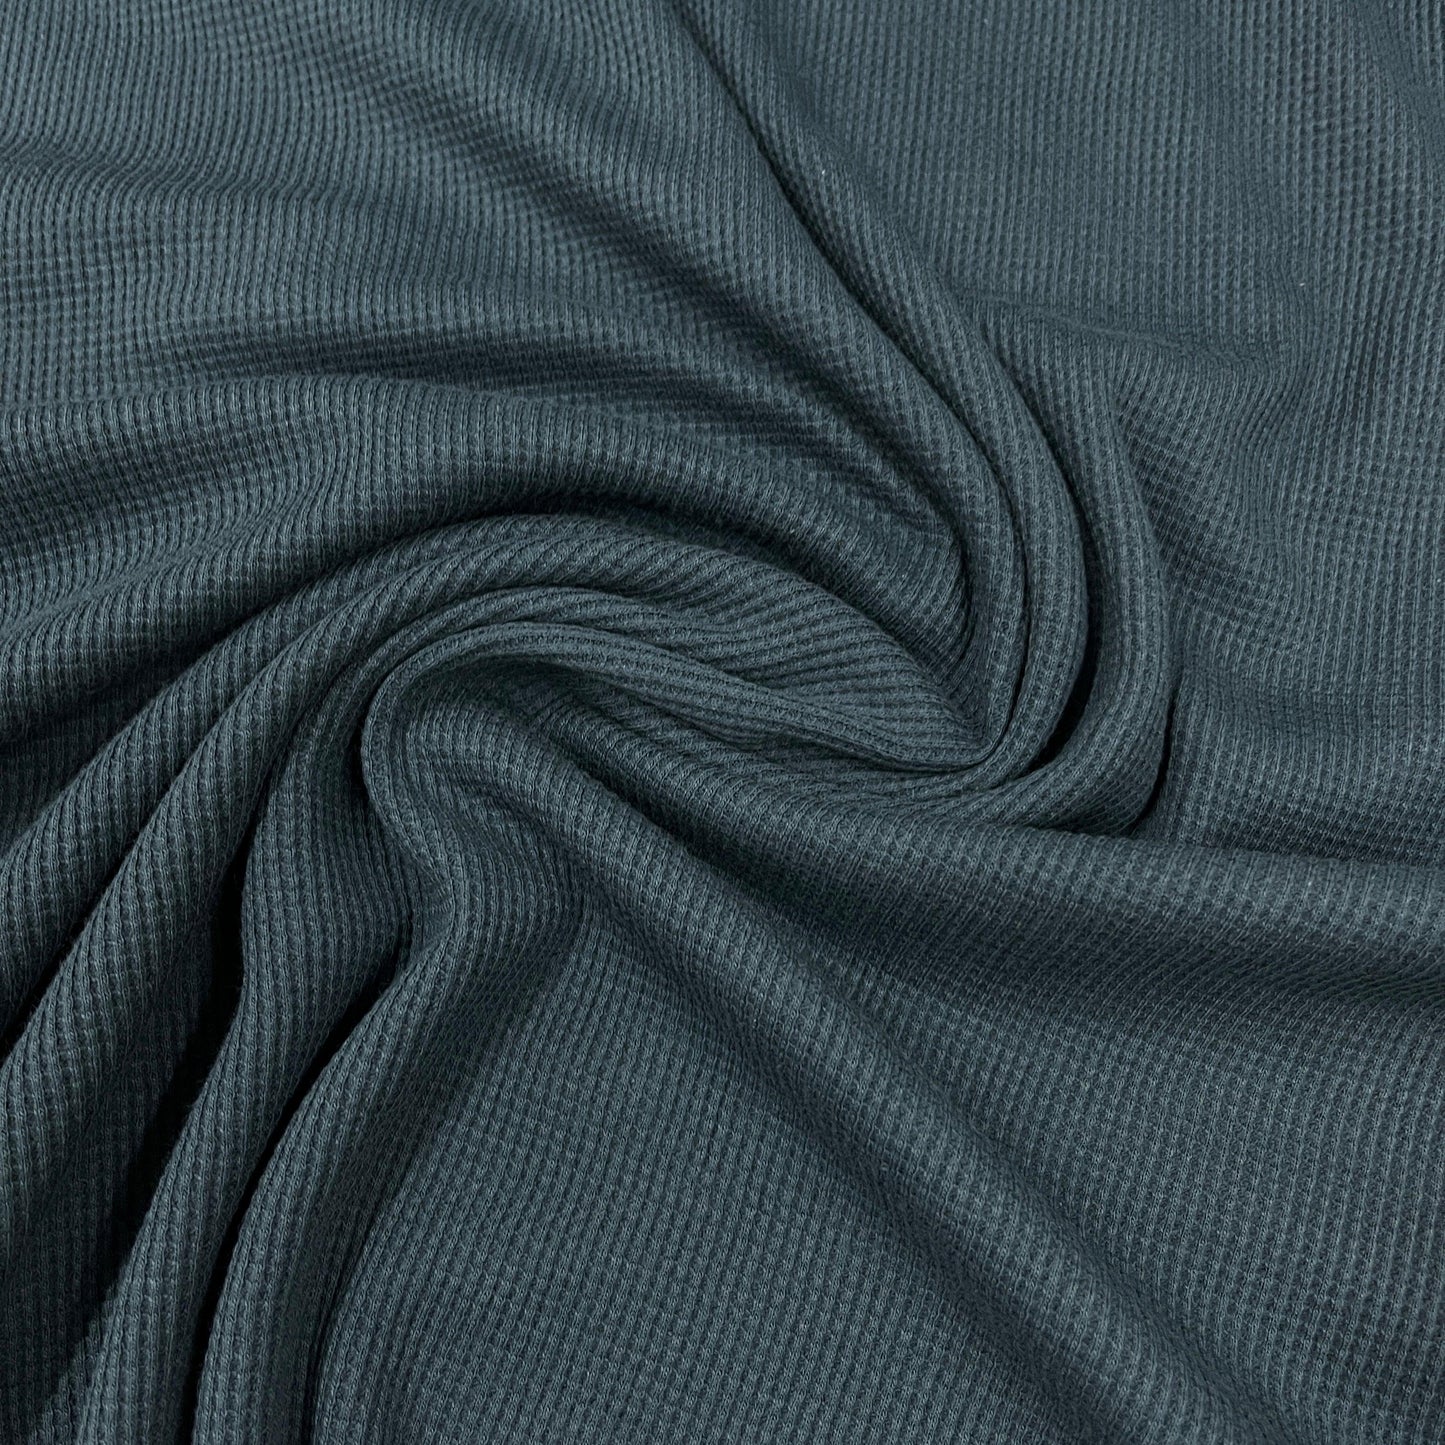 Ultramarine Organic Cotton Waffle Thermal Fabric - Nature's Fabrics